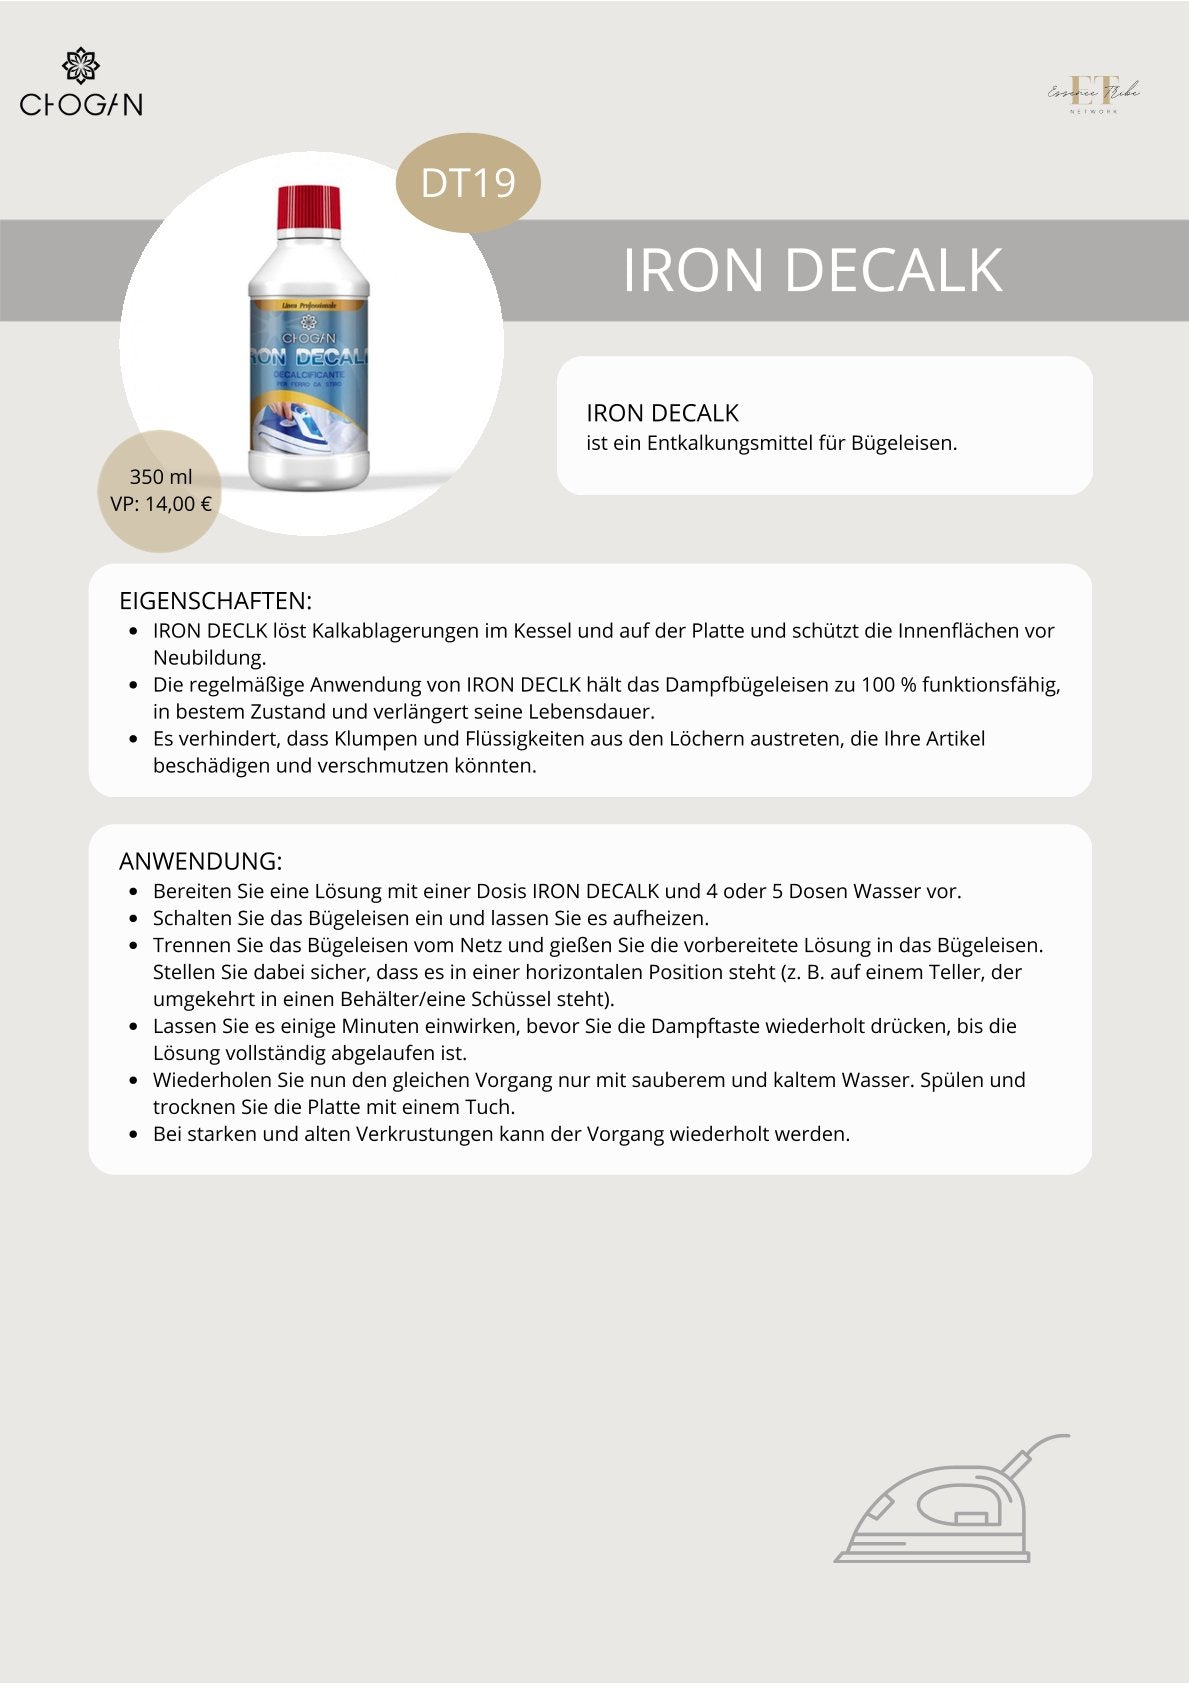 Iron Decalk – Entkalker Für Bügeleisen